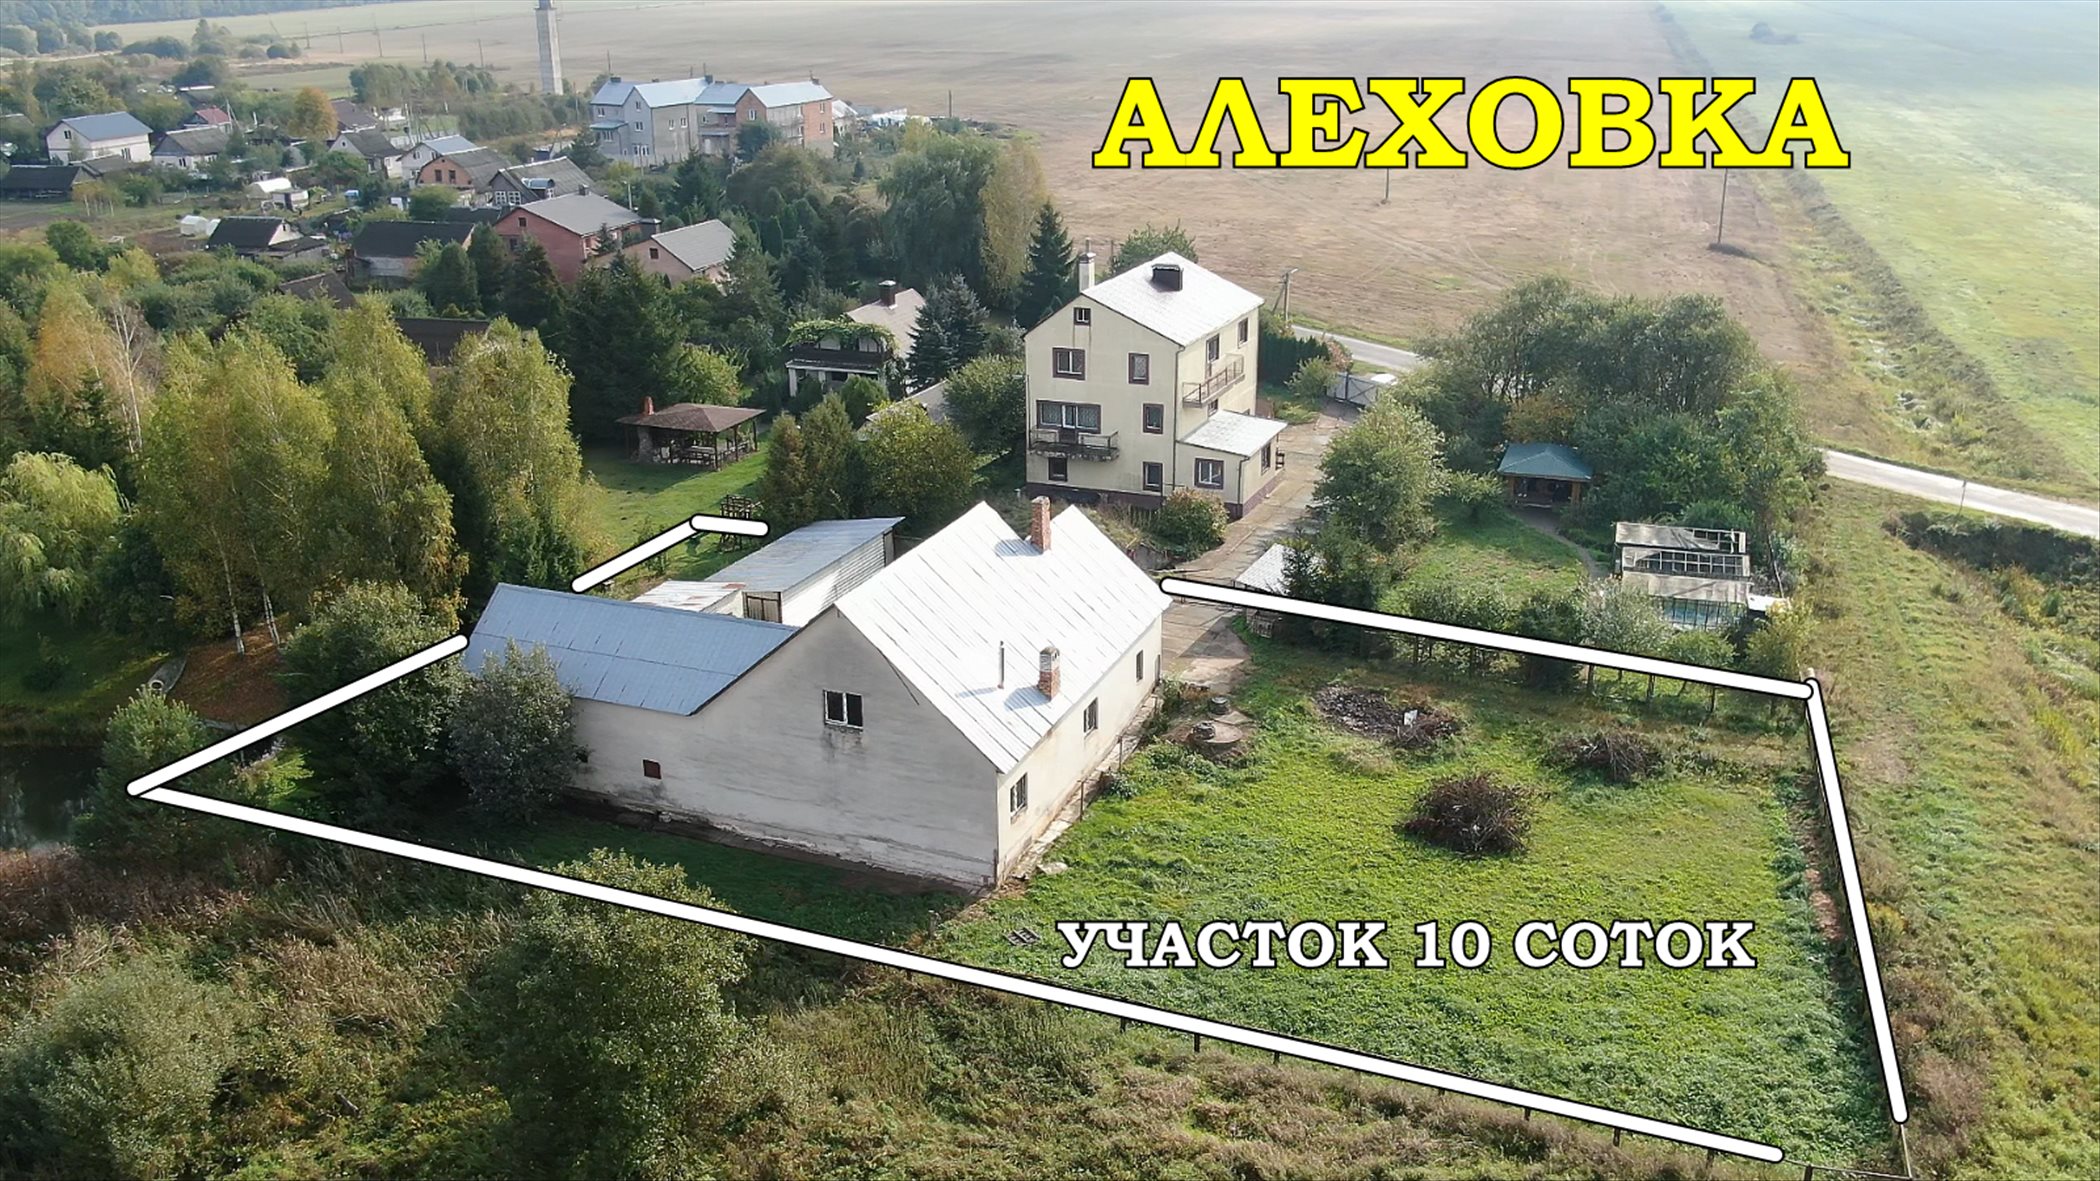 Продам кирпичный дом в д. Алеховка, 45км.от Минска - фотография